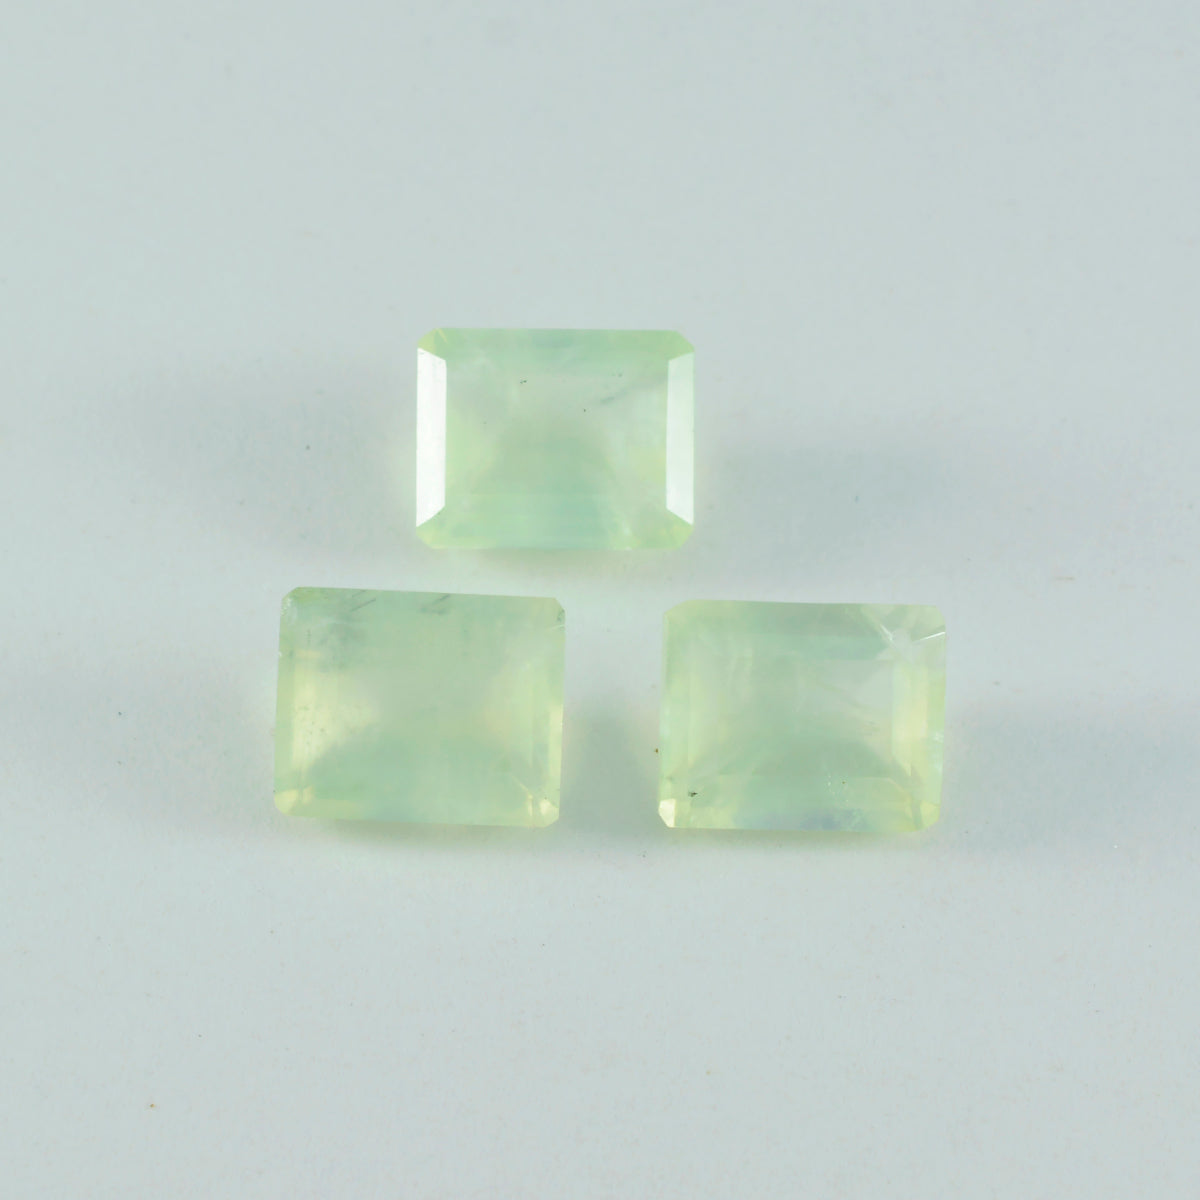 Riyogems 1PC groene prehniet gefacetteerde 9x11 mm achthoekige vorm fantastische kwaliteitsedelstenen